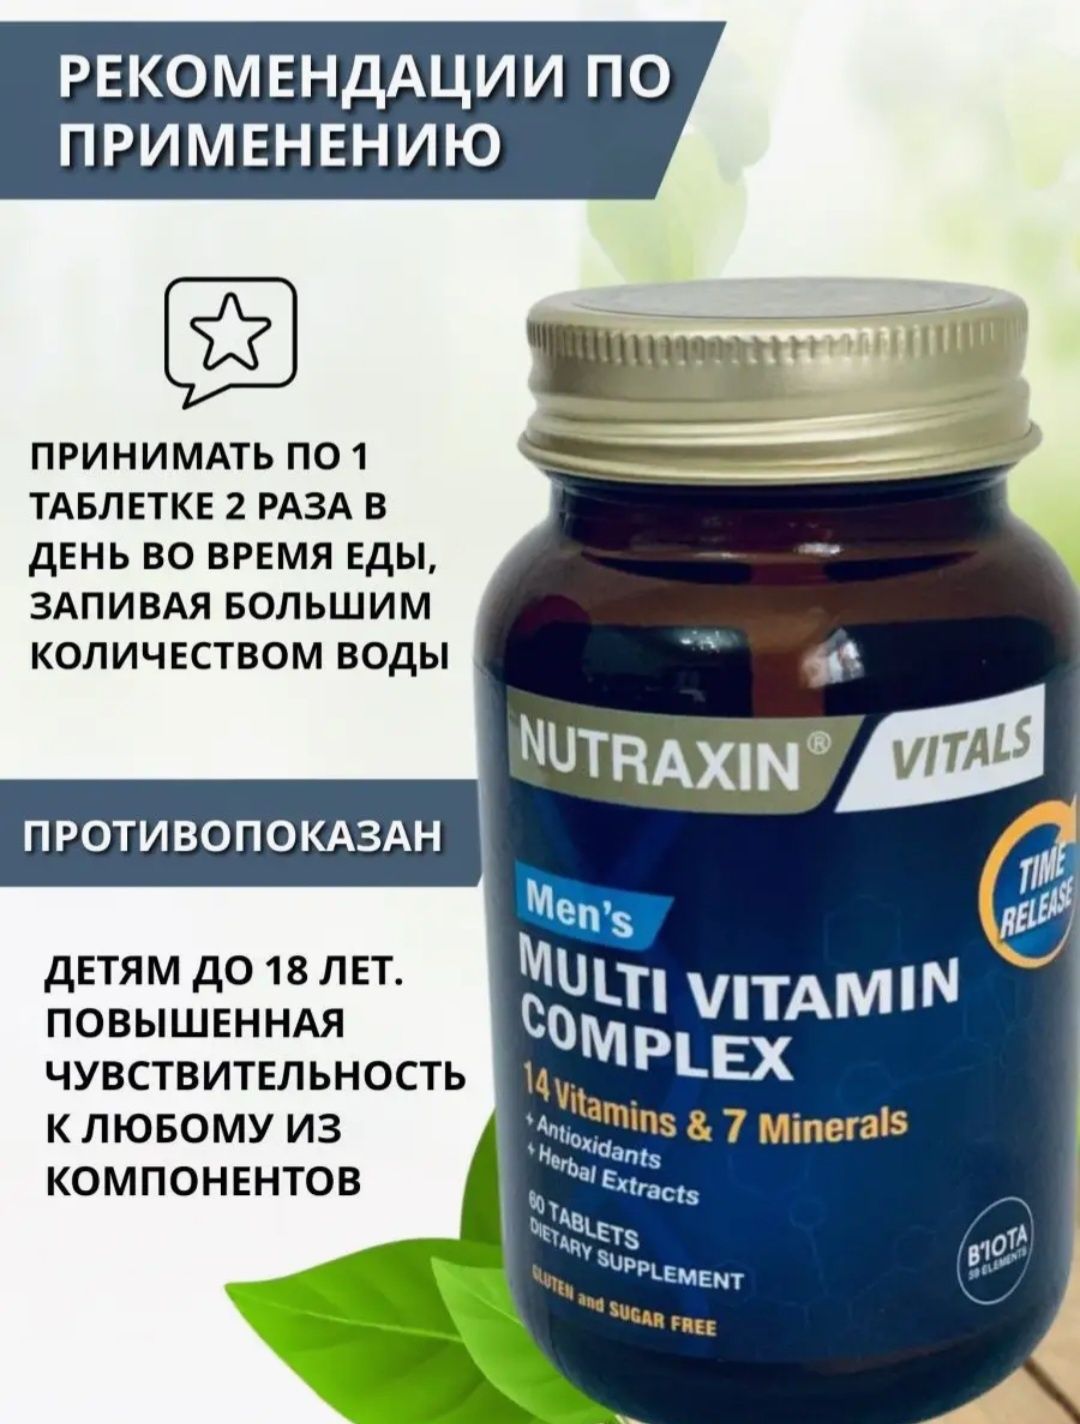 Nutraxin/Premium/Витаминов 14/минералов 7/комплекс/мужчинам